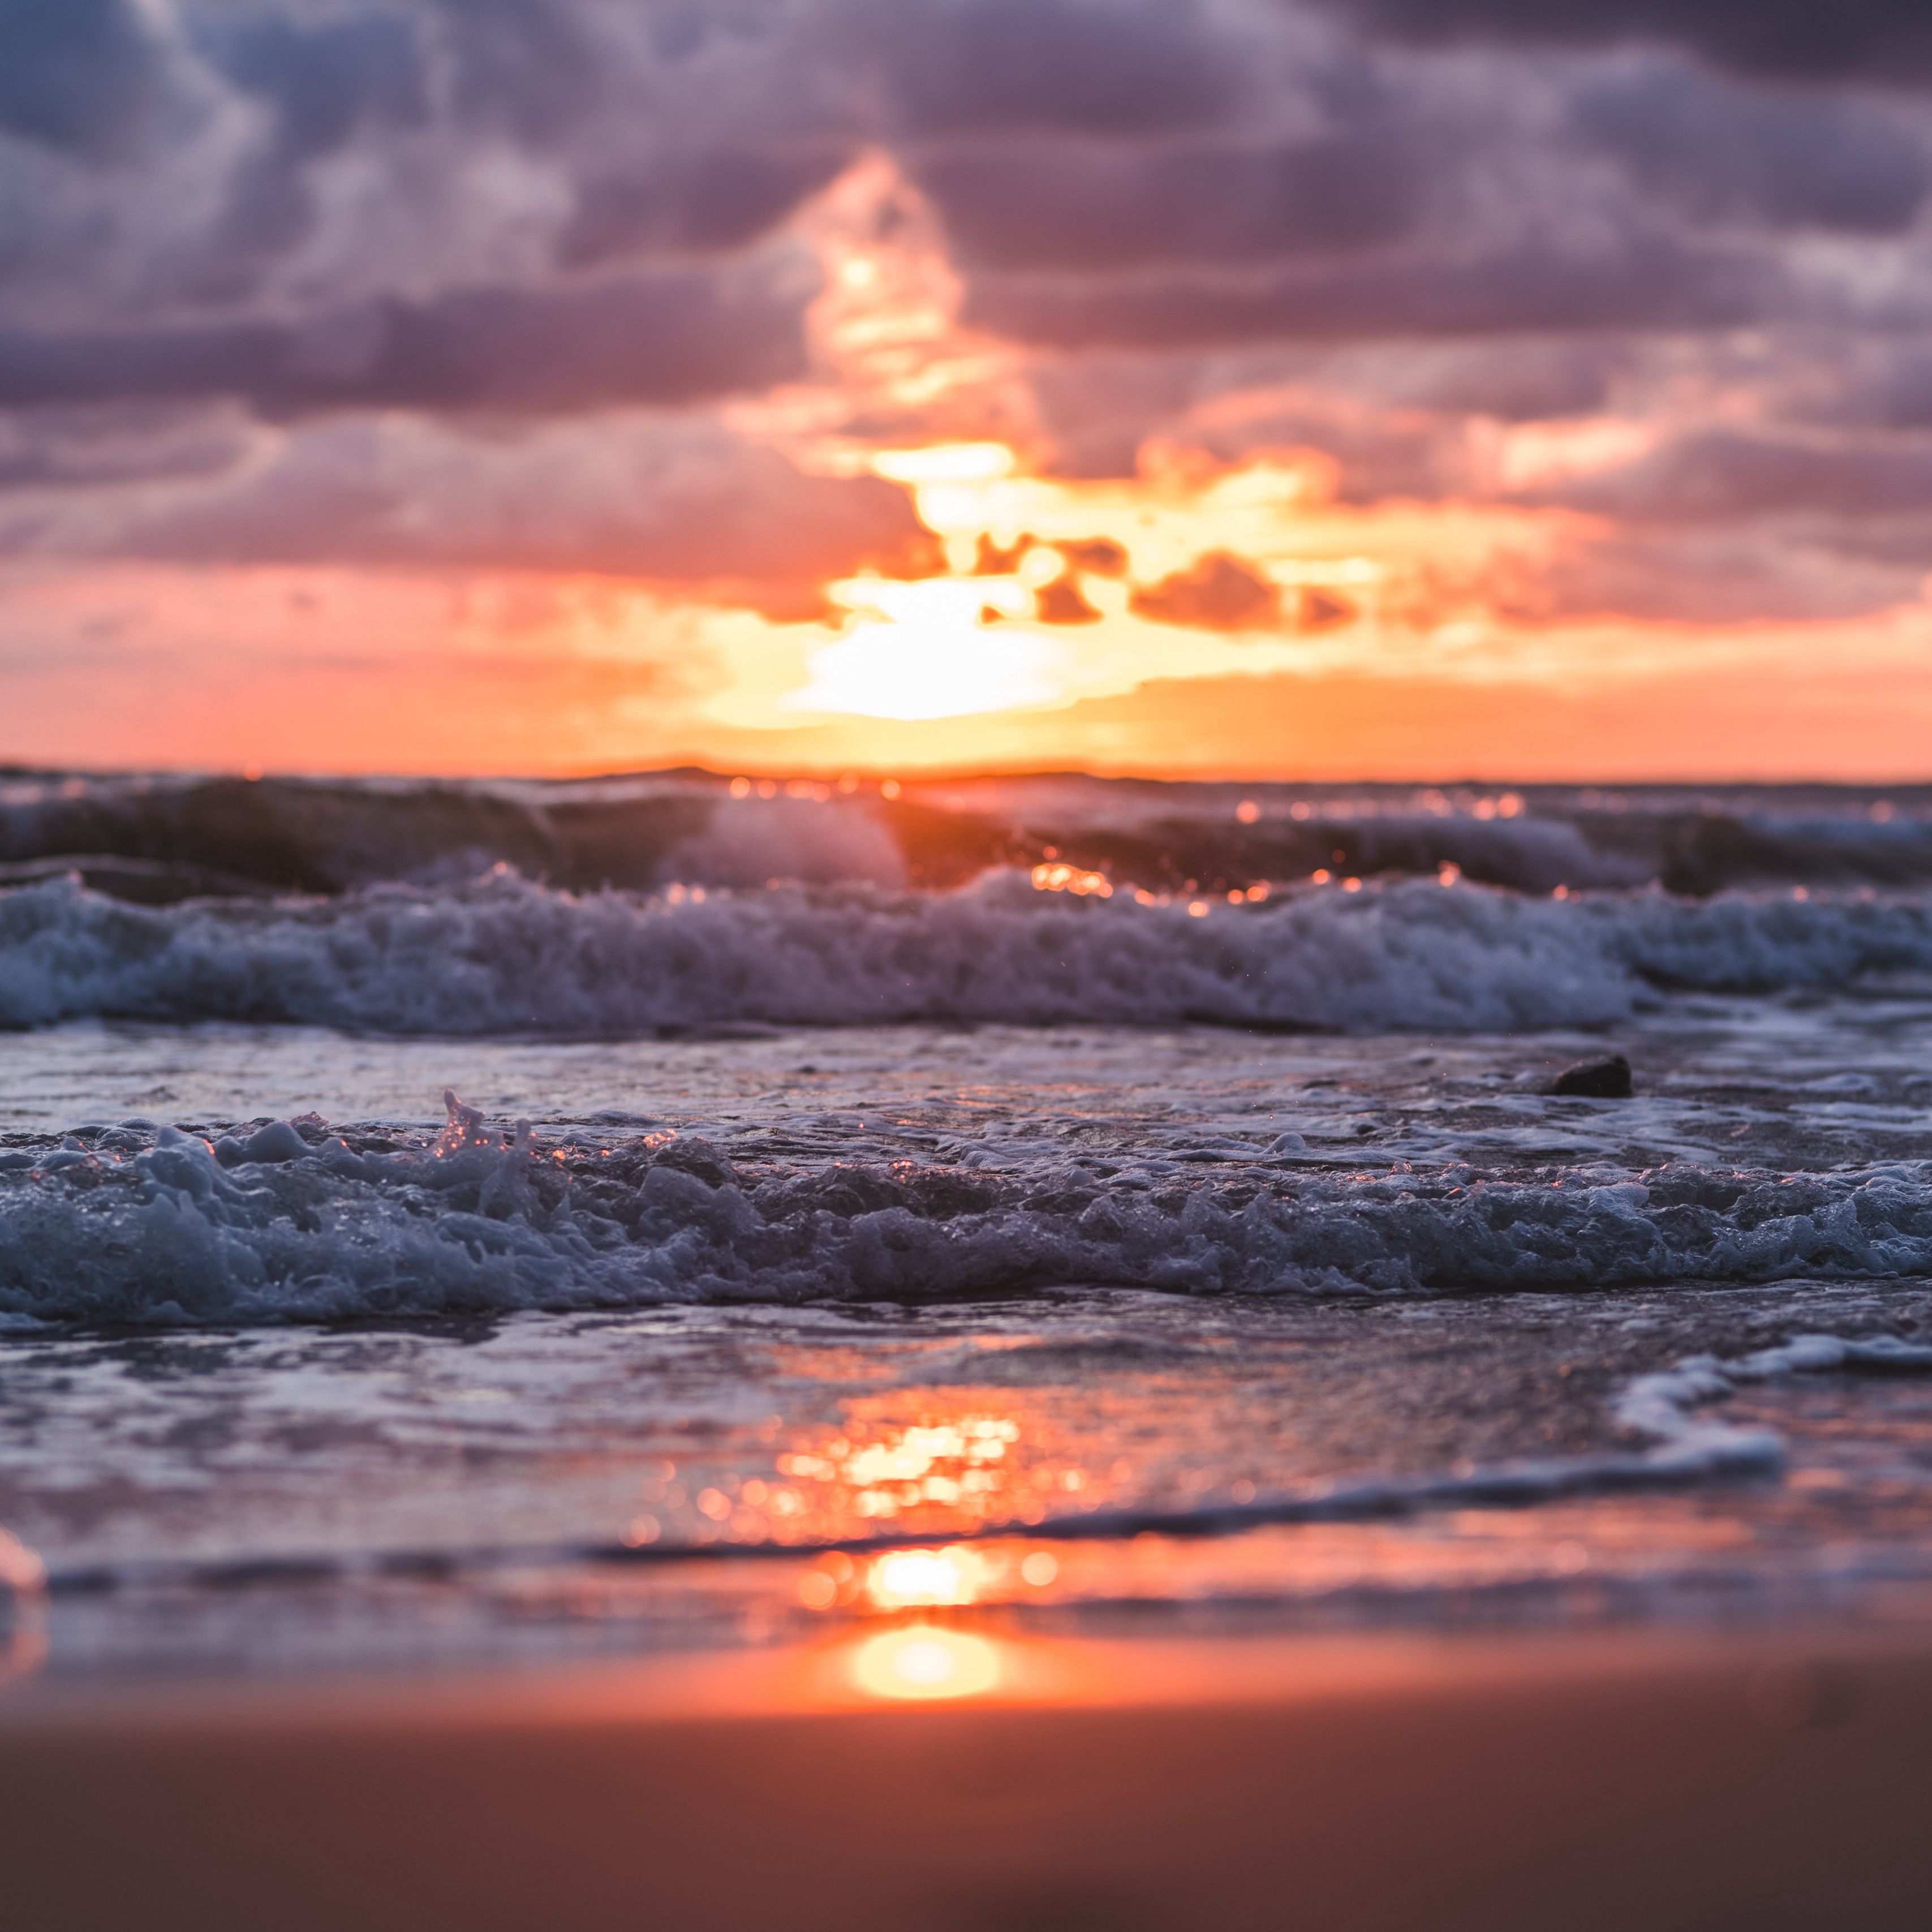 Download wallpaper 3415x3415 sunset sea waves beach sun cloud